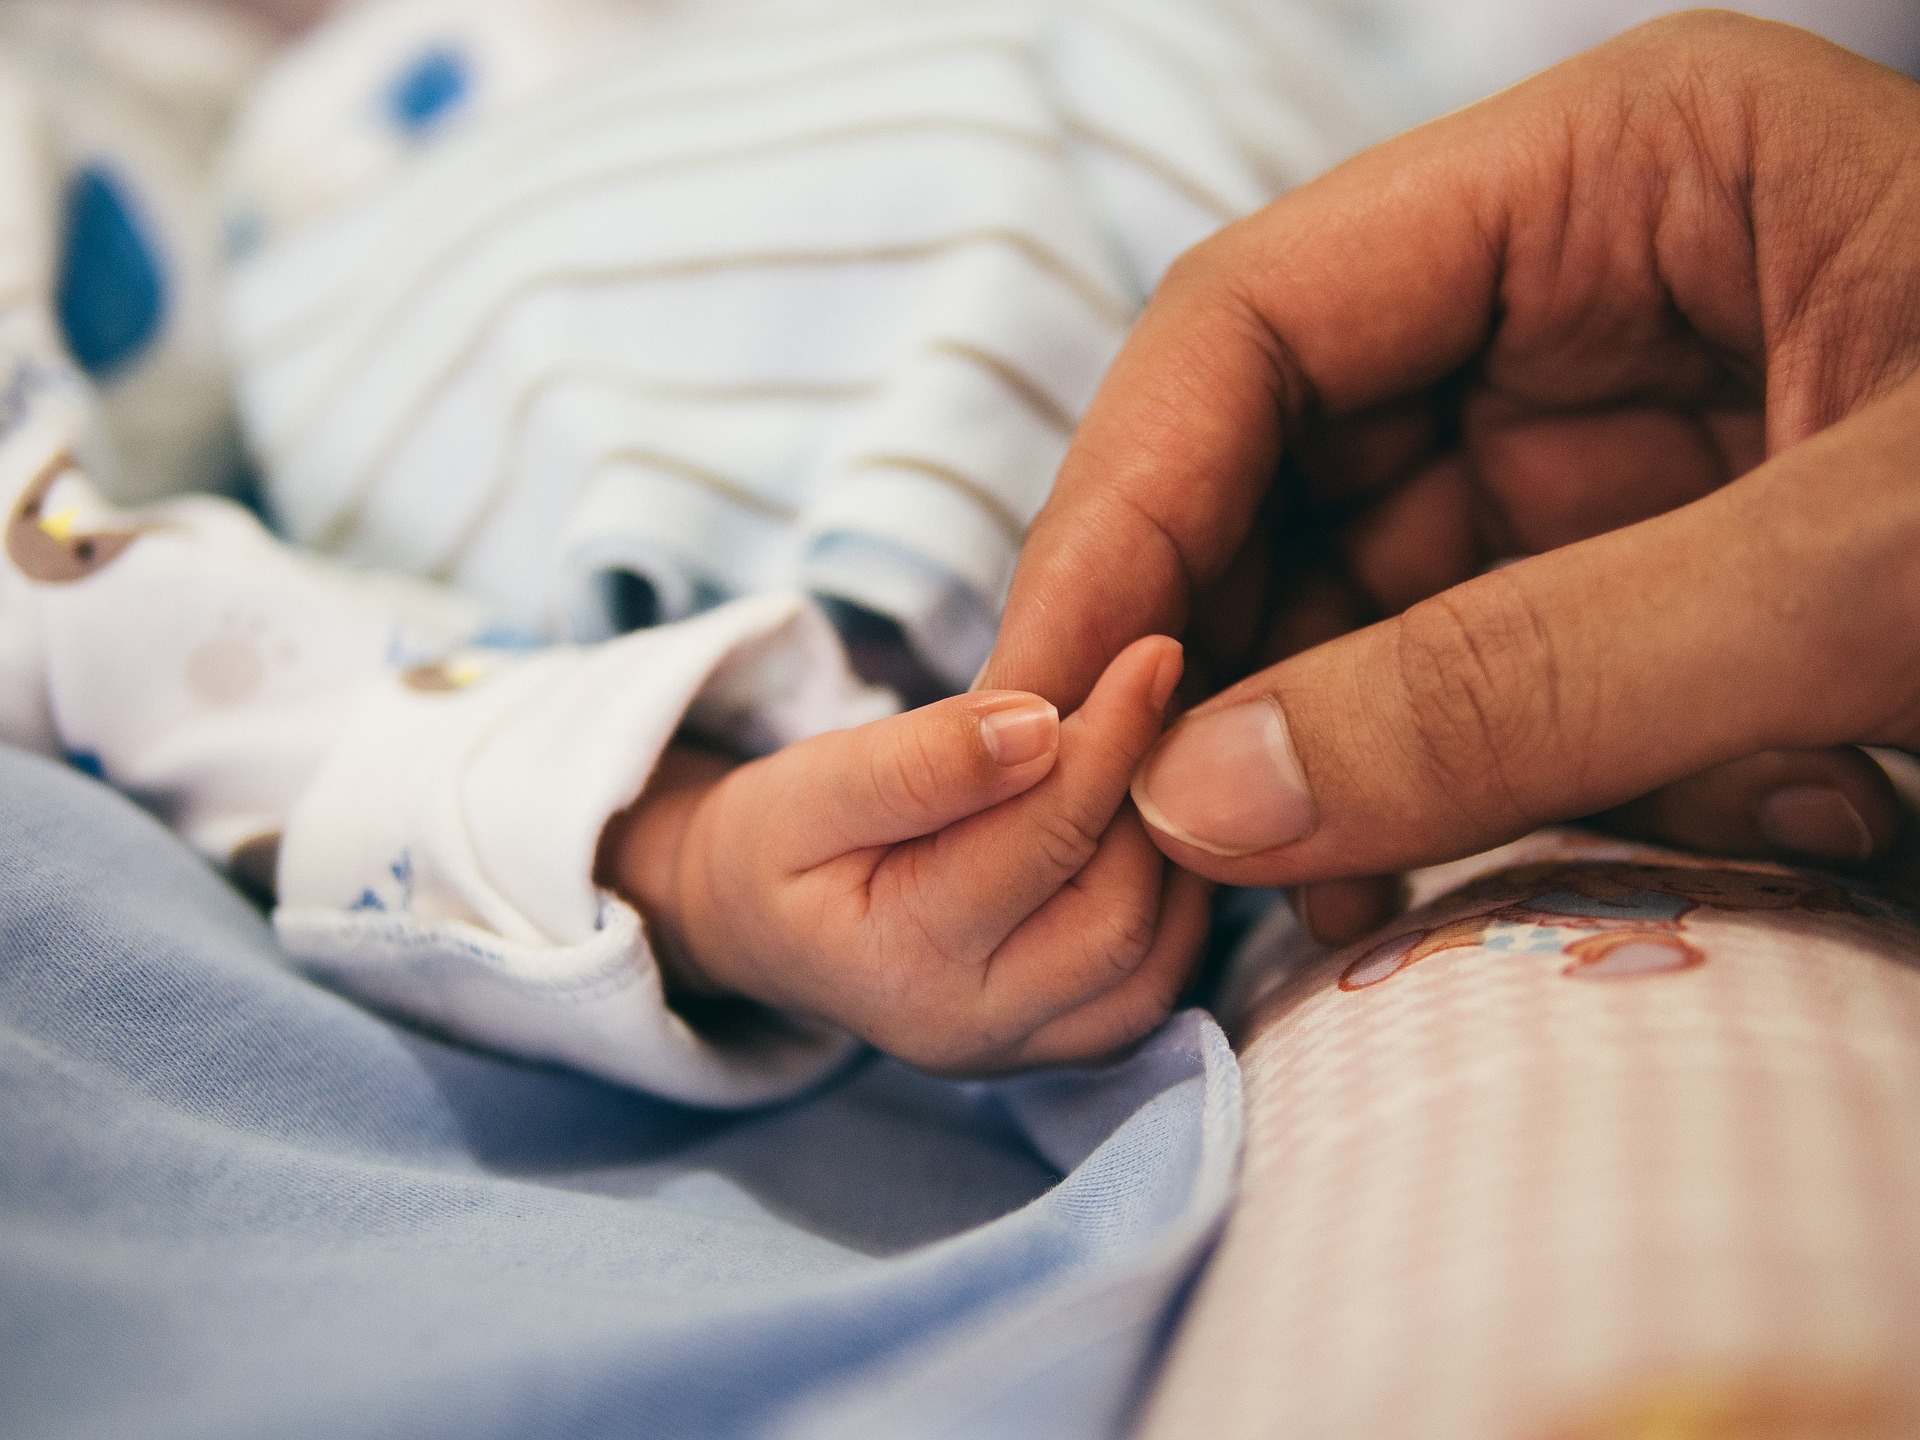 Bebe rođene u Hrvatskoj od 1. ožujka ići će na posebne testove koji otkrivaju rijetku genetsku bolest